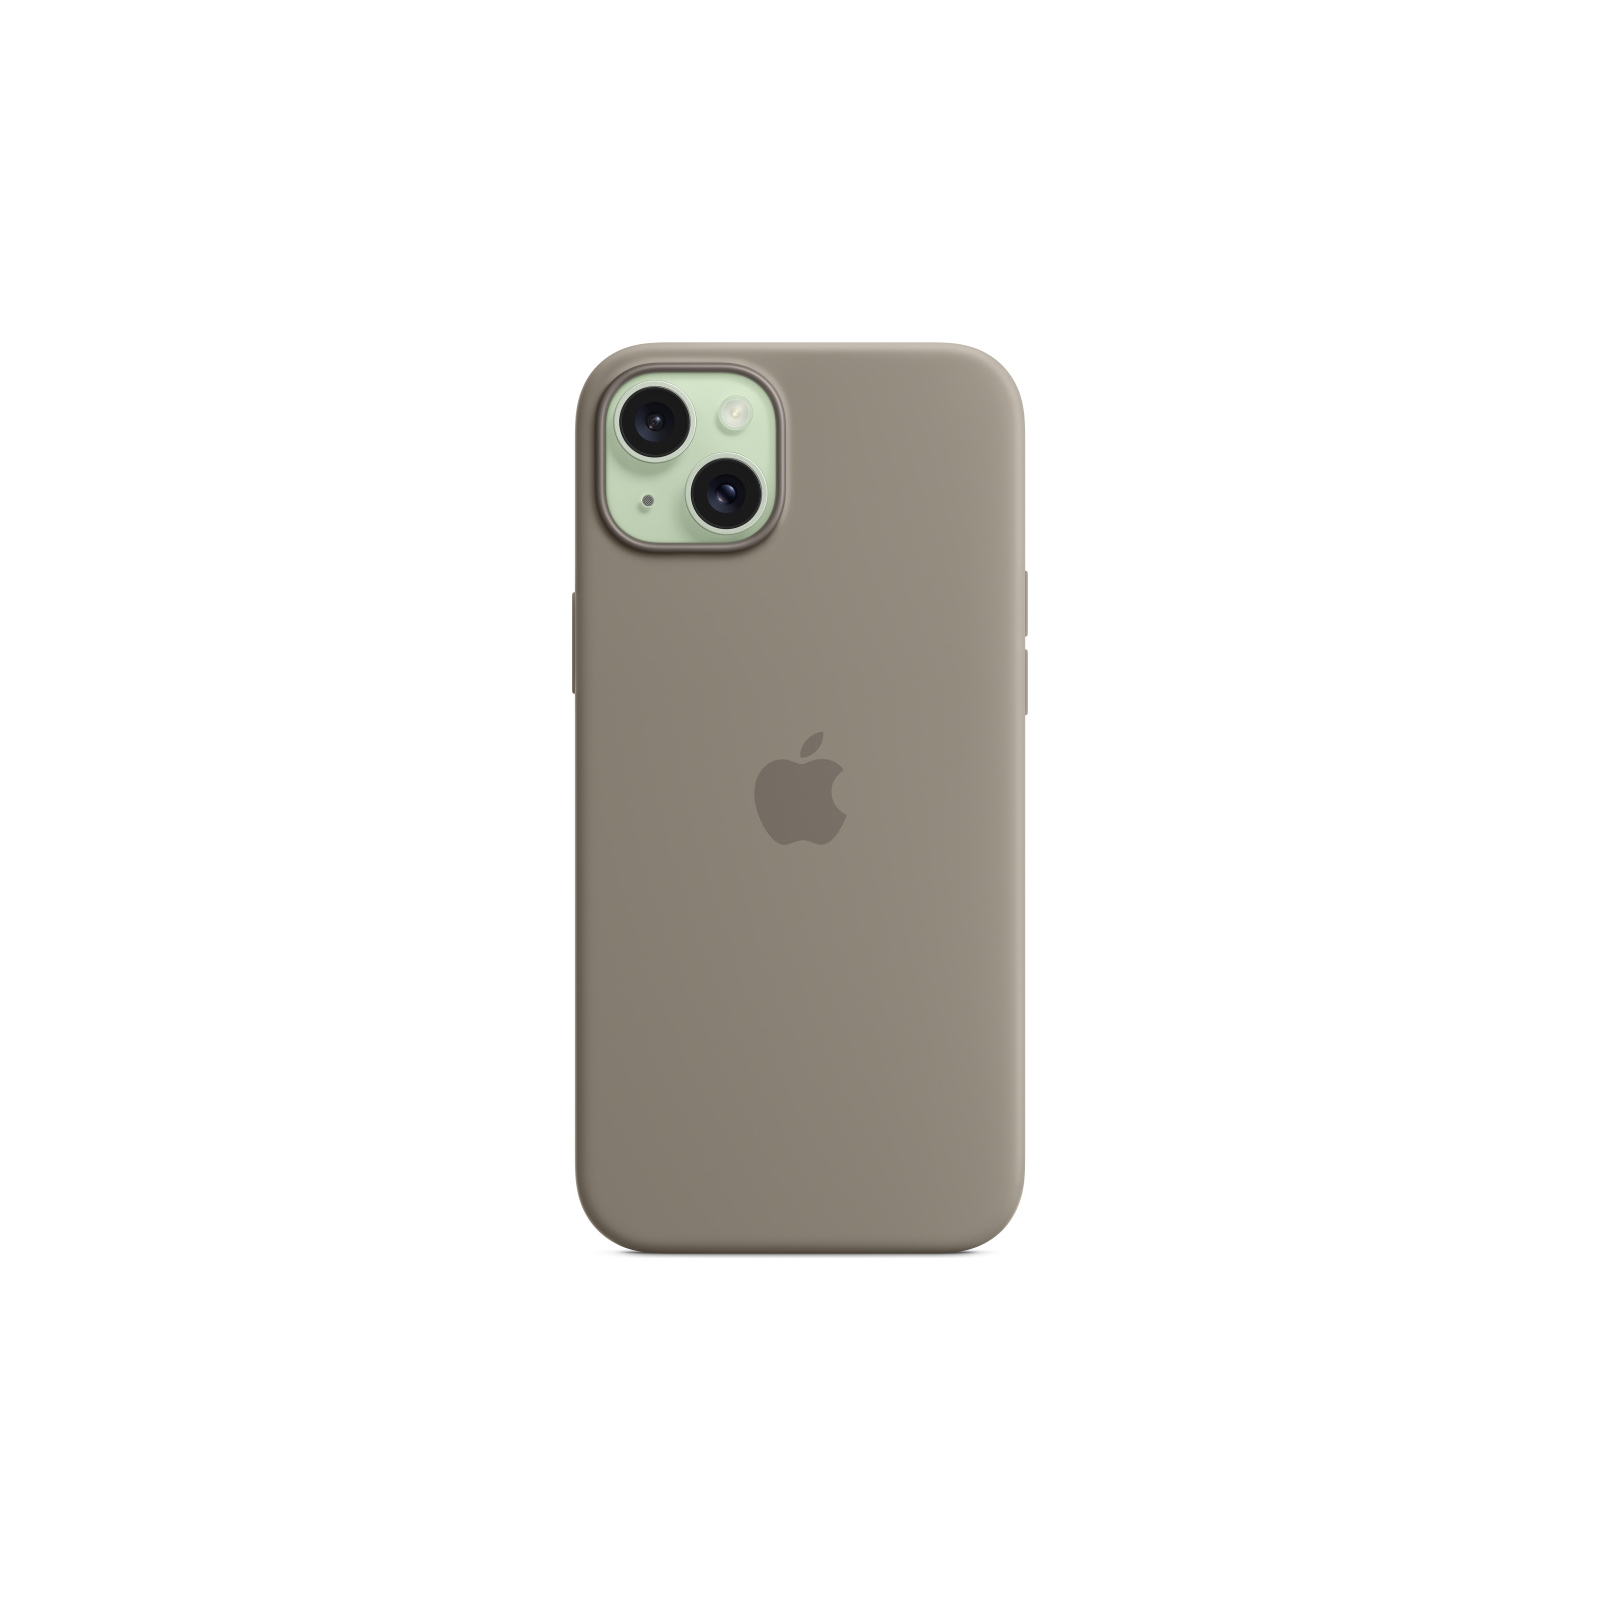 Чехол для мобильного телефона Apple iPhone 15 Plus Silicone Case with MagSafe Winter Blue (MT193ZM/A) изображение 4